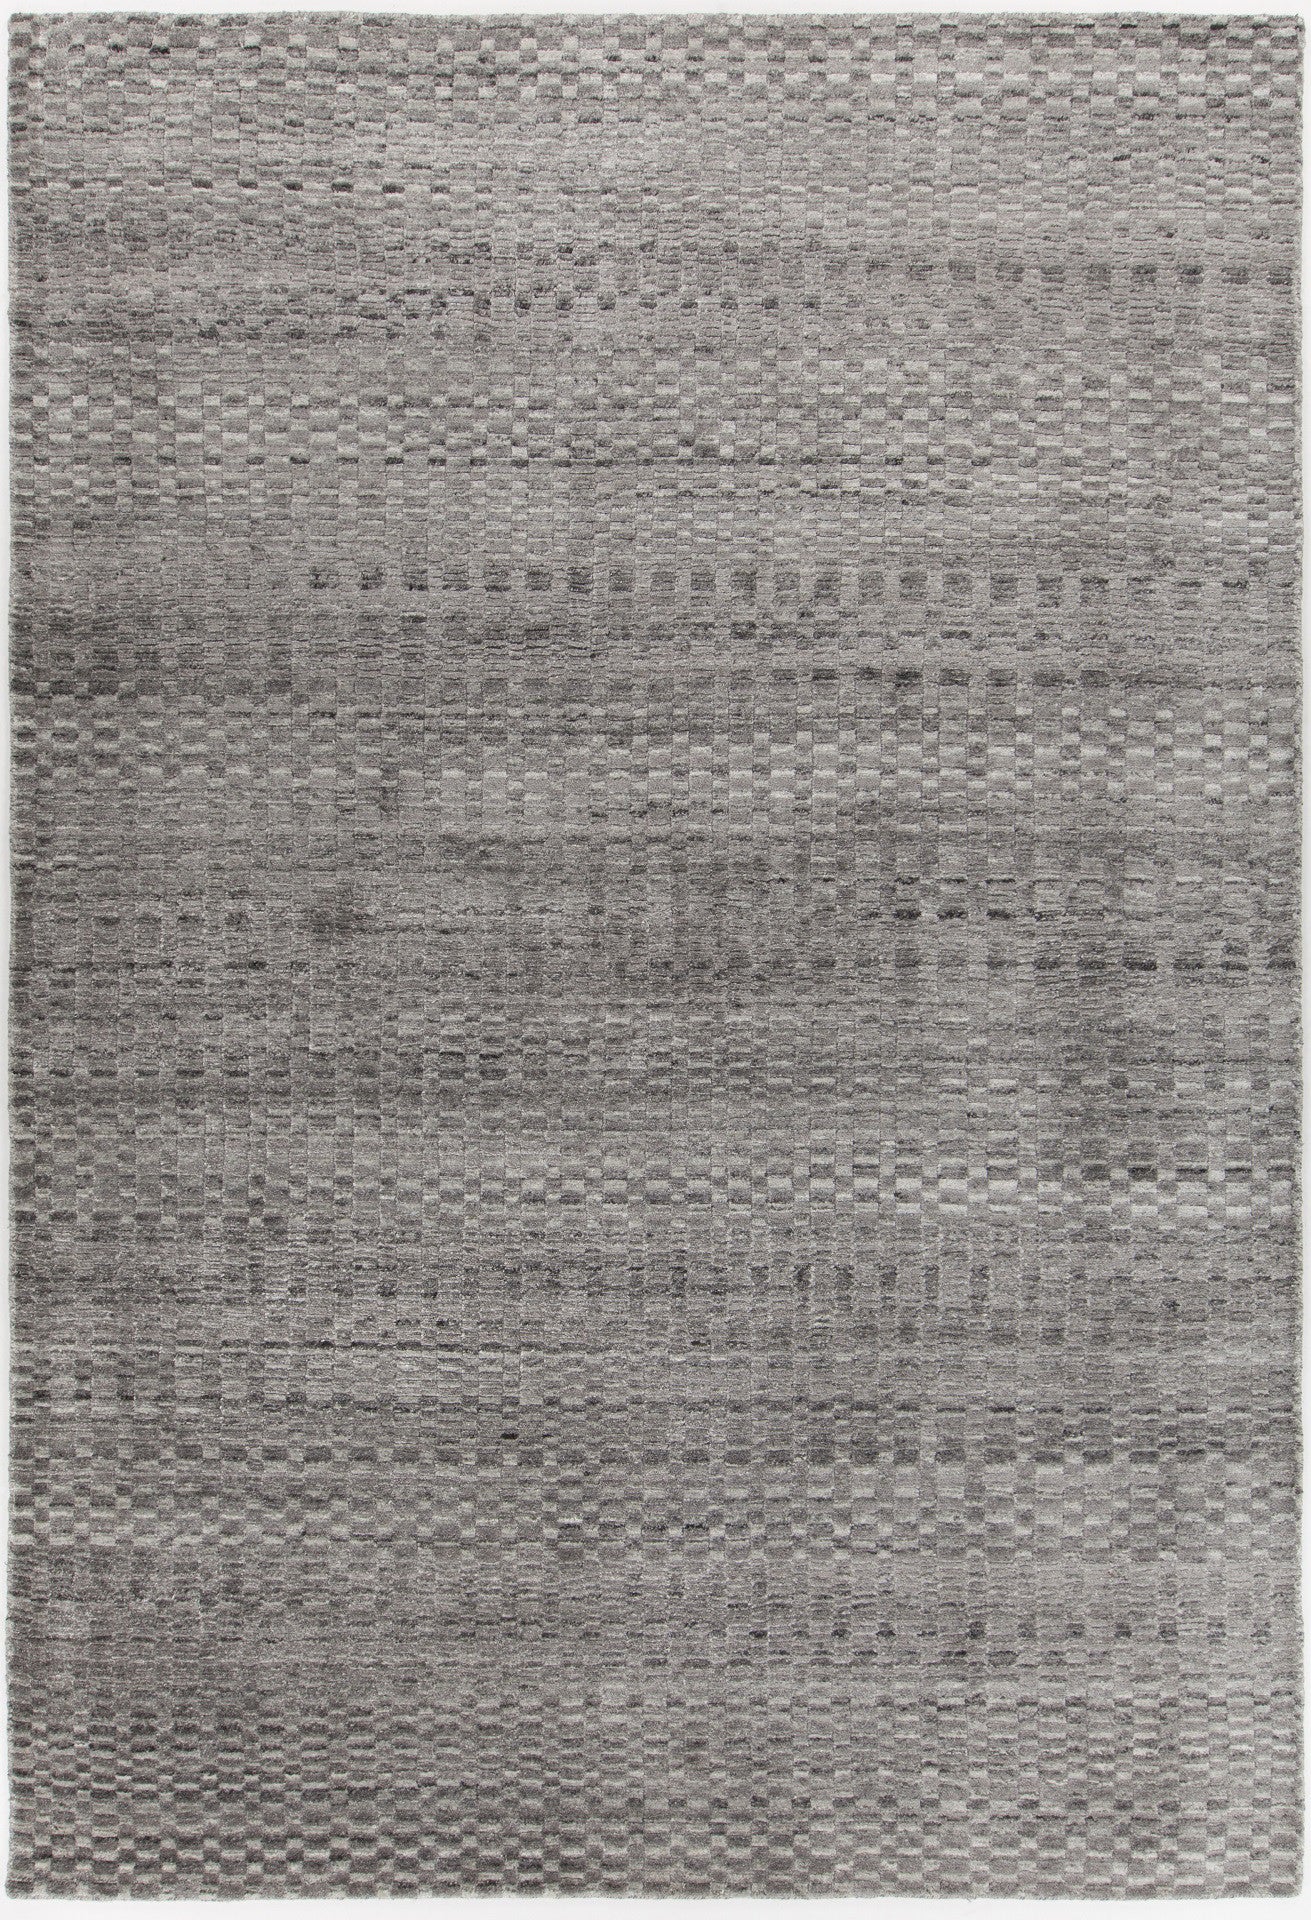 Chandra Melina MEL-46200 Grey/Silver Area Rug main image